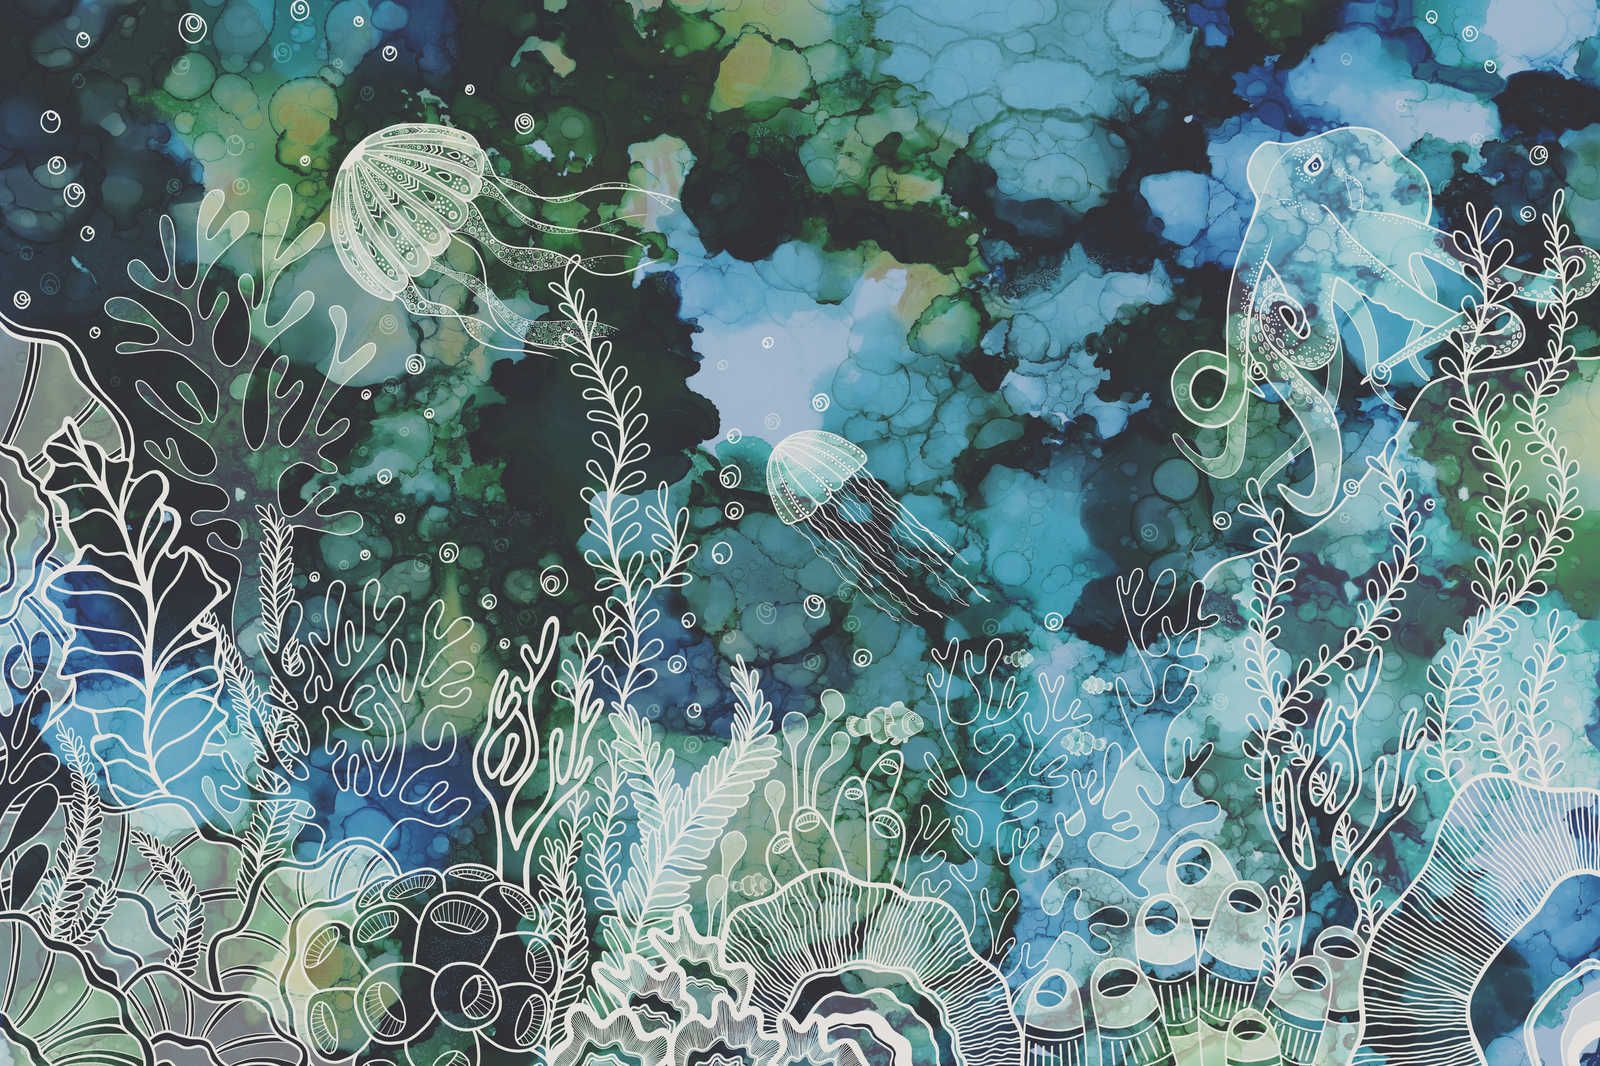             Leinwandbild mit Unterwasser Korallenriff in Acryl Farben – 0,90 m x 0,60 m
        